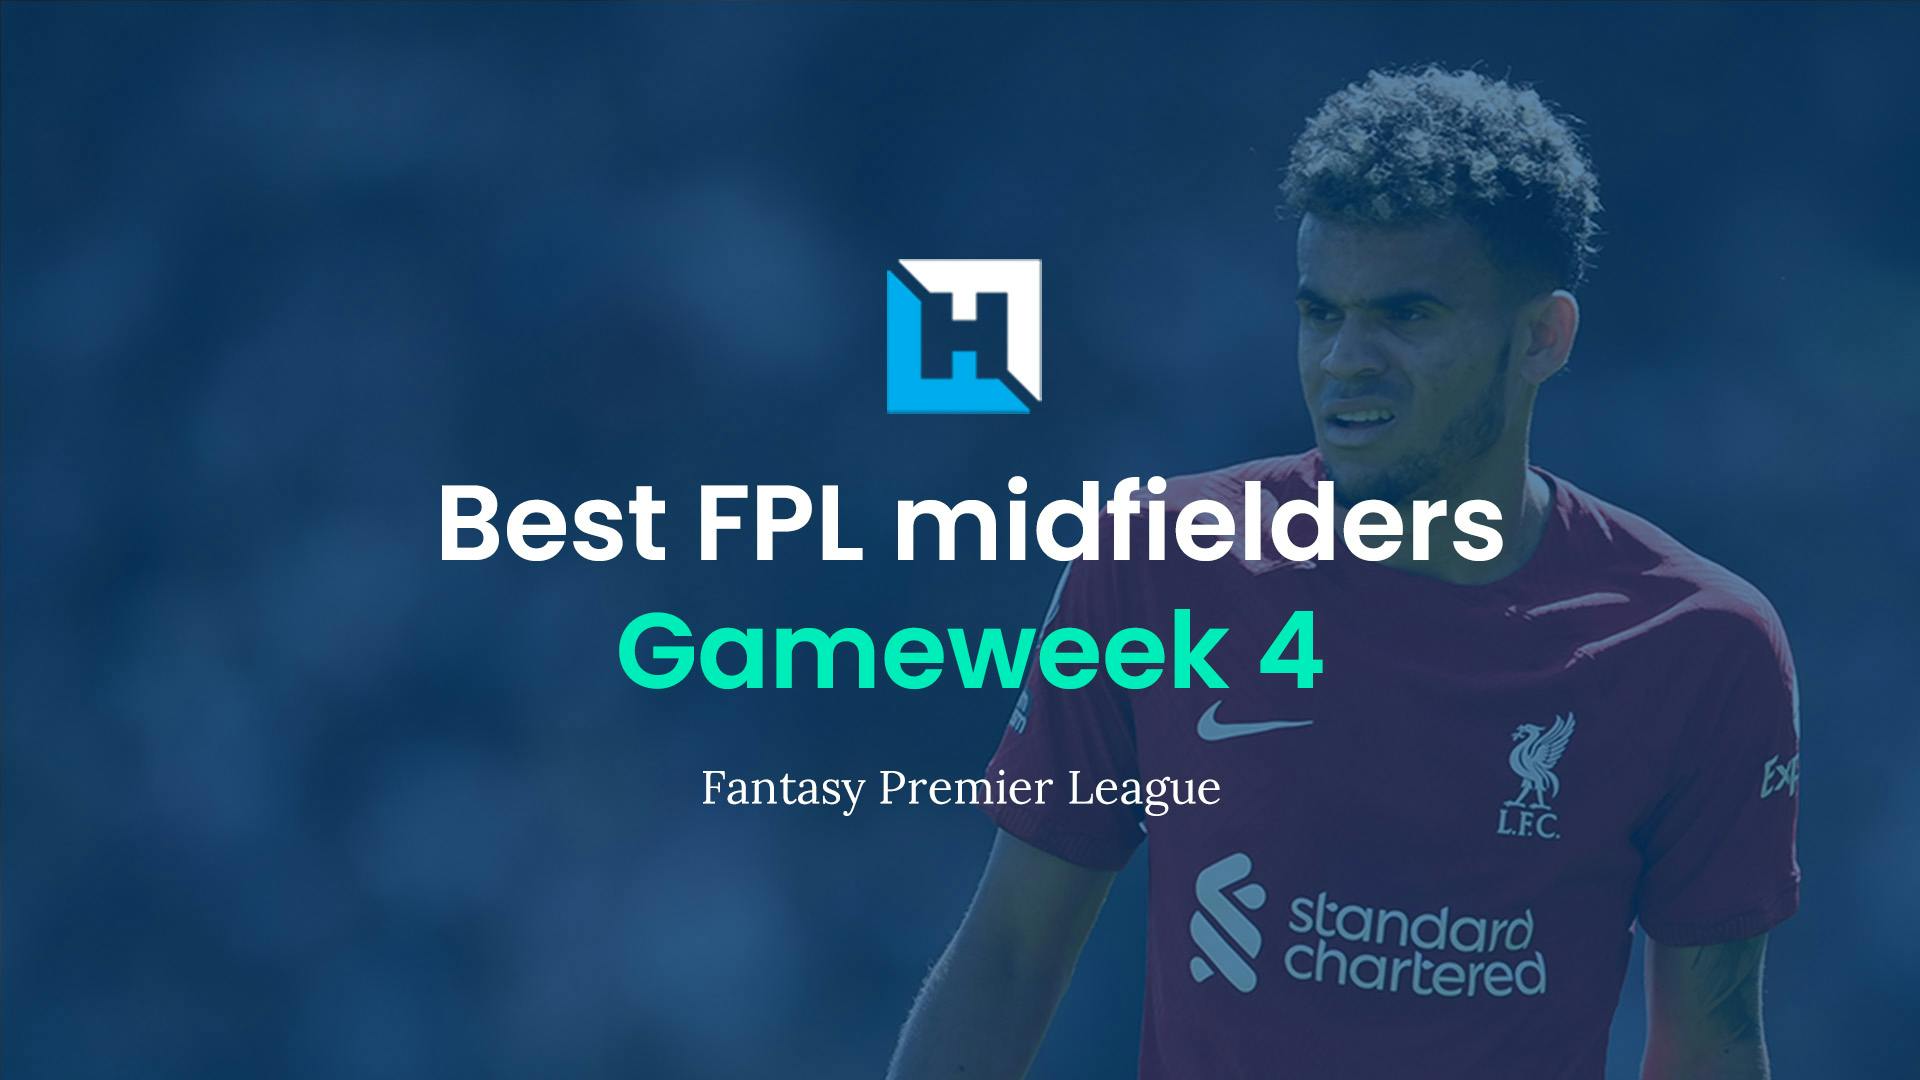 Best FPL players for Gameweek 4: Top 5 best midfielders